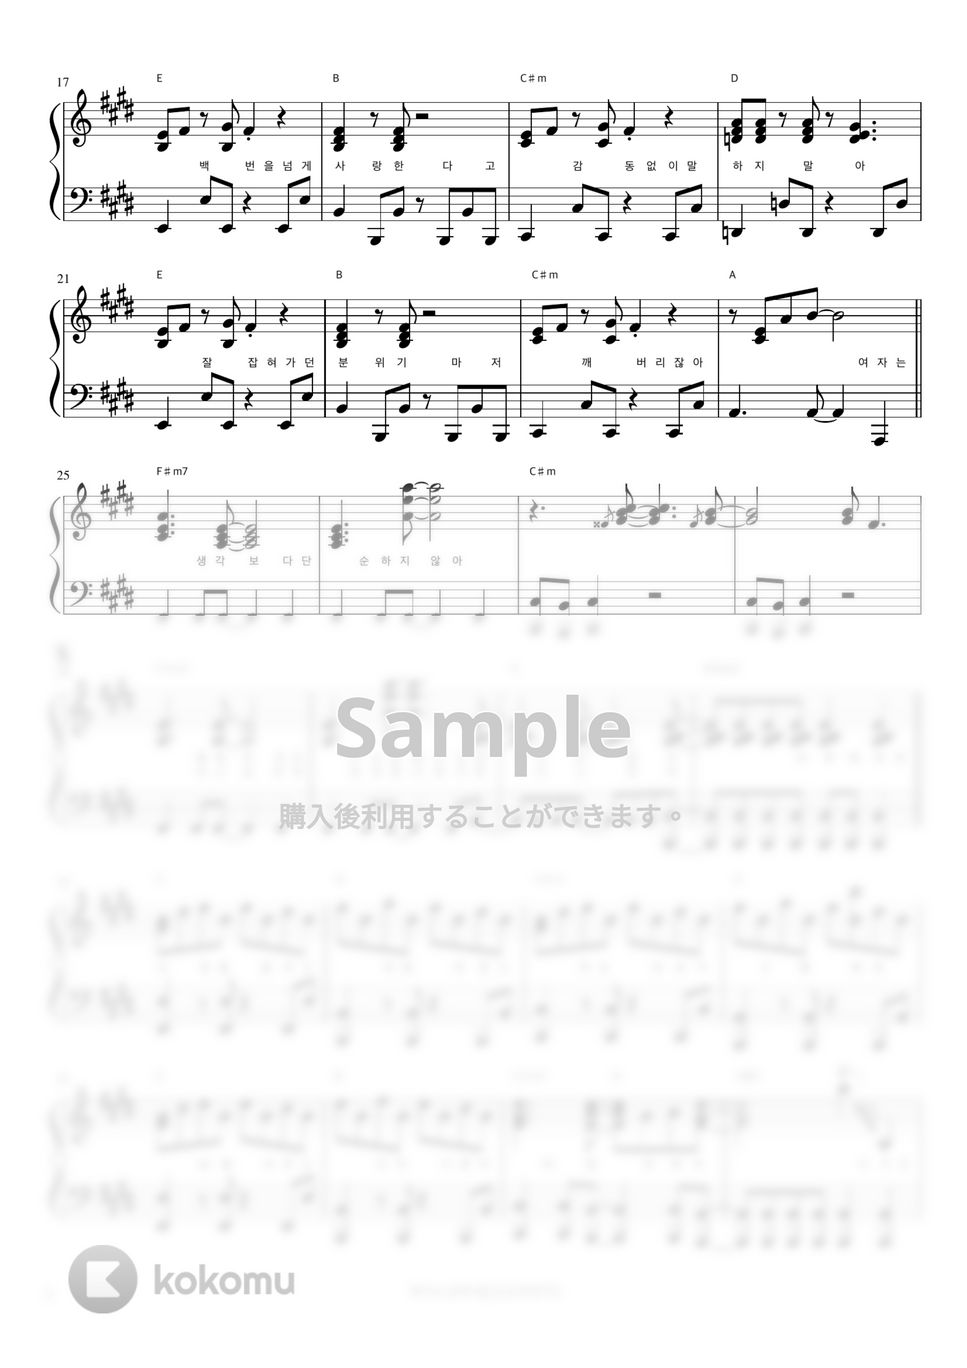 ユンナ - Password 486 (伴奏楽譜) by 피아노정류장